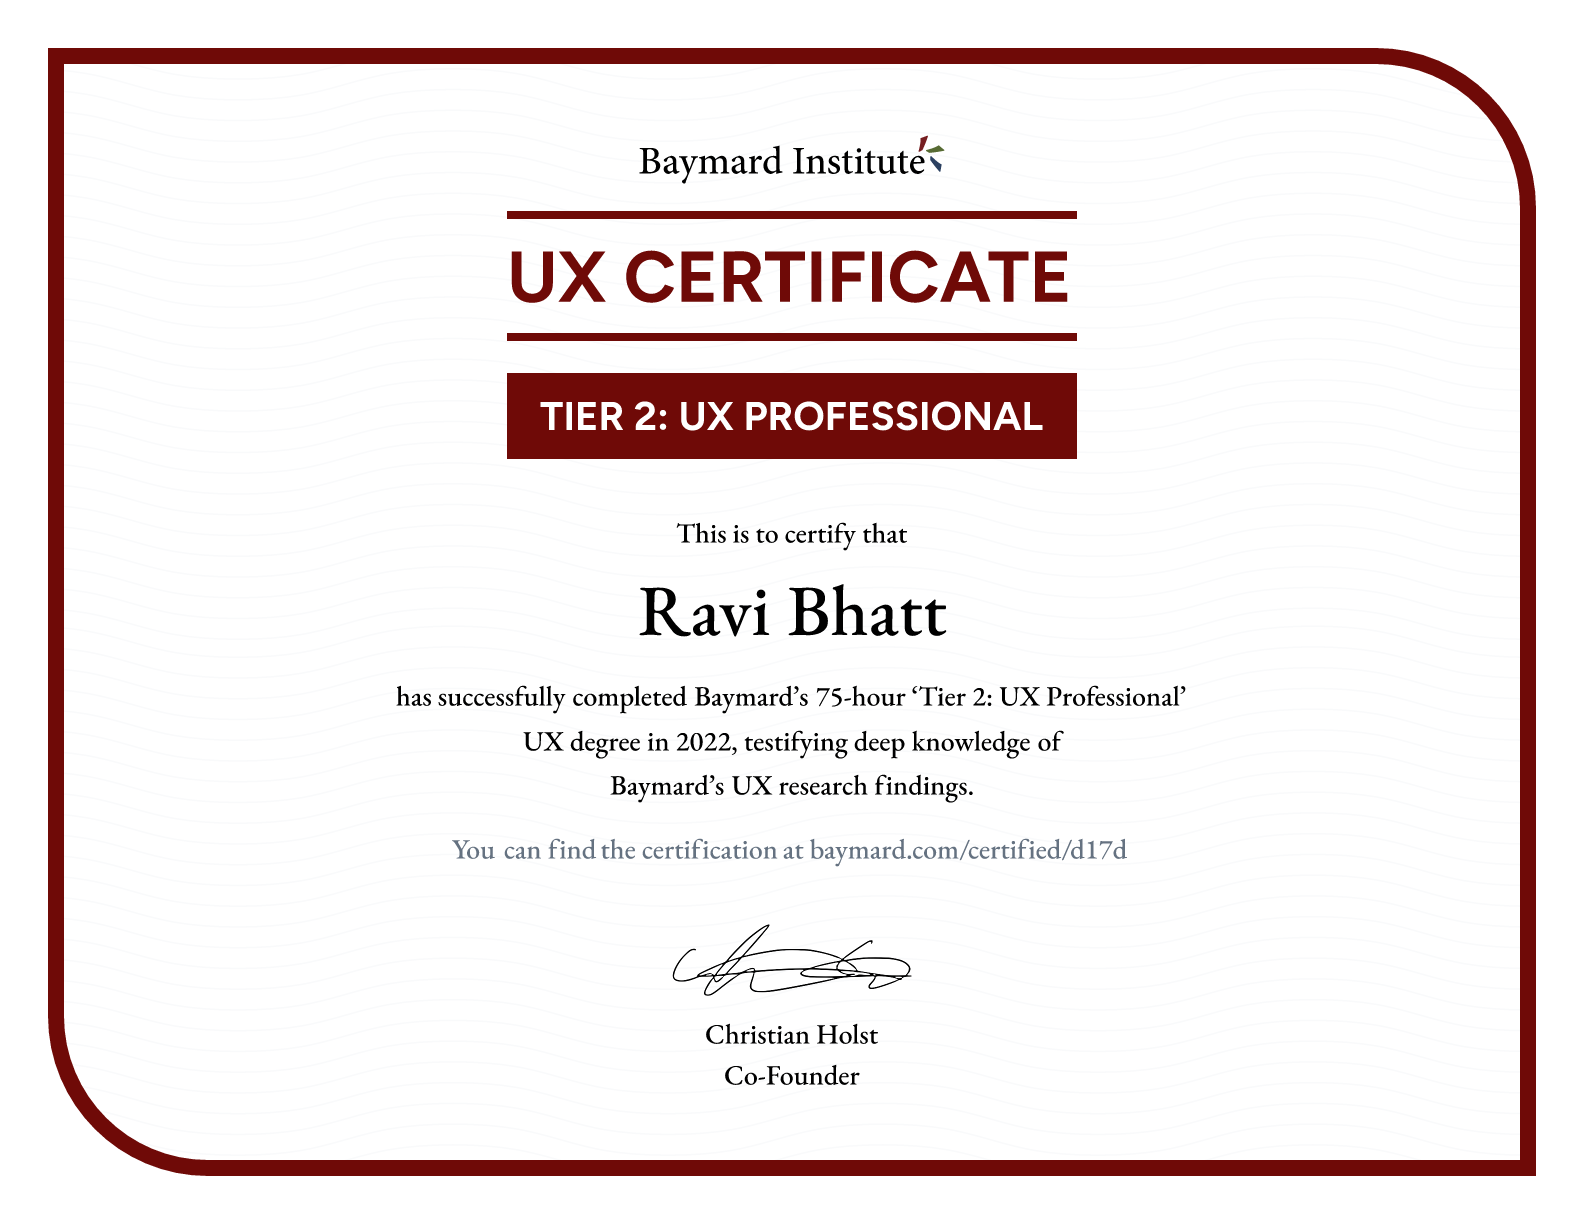 Ravi Bhatt’s certificate